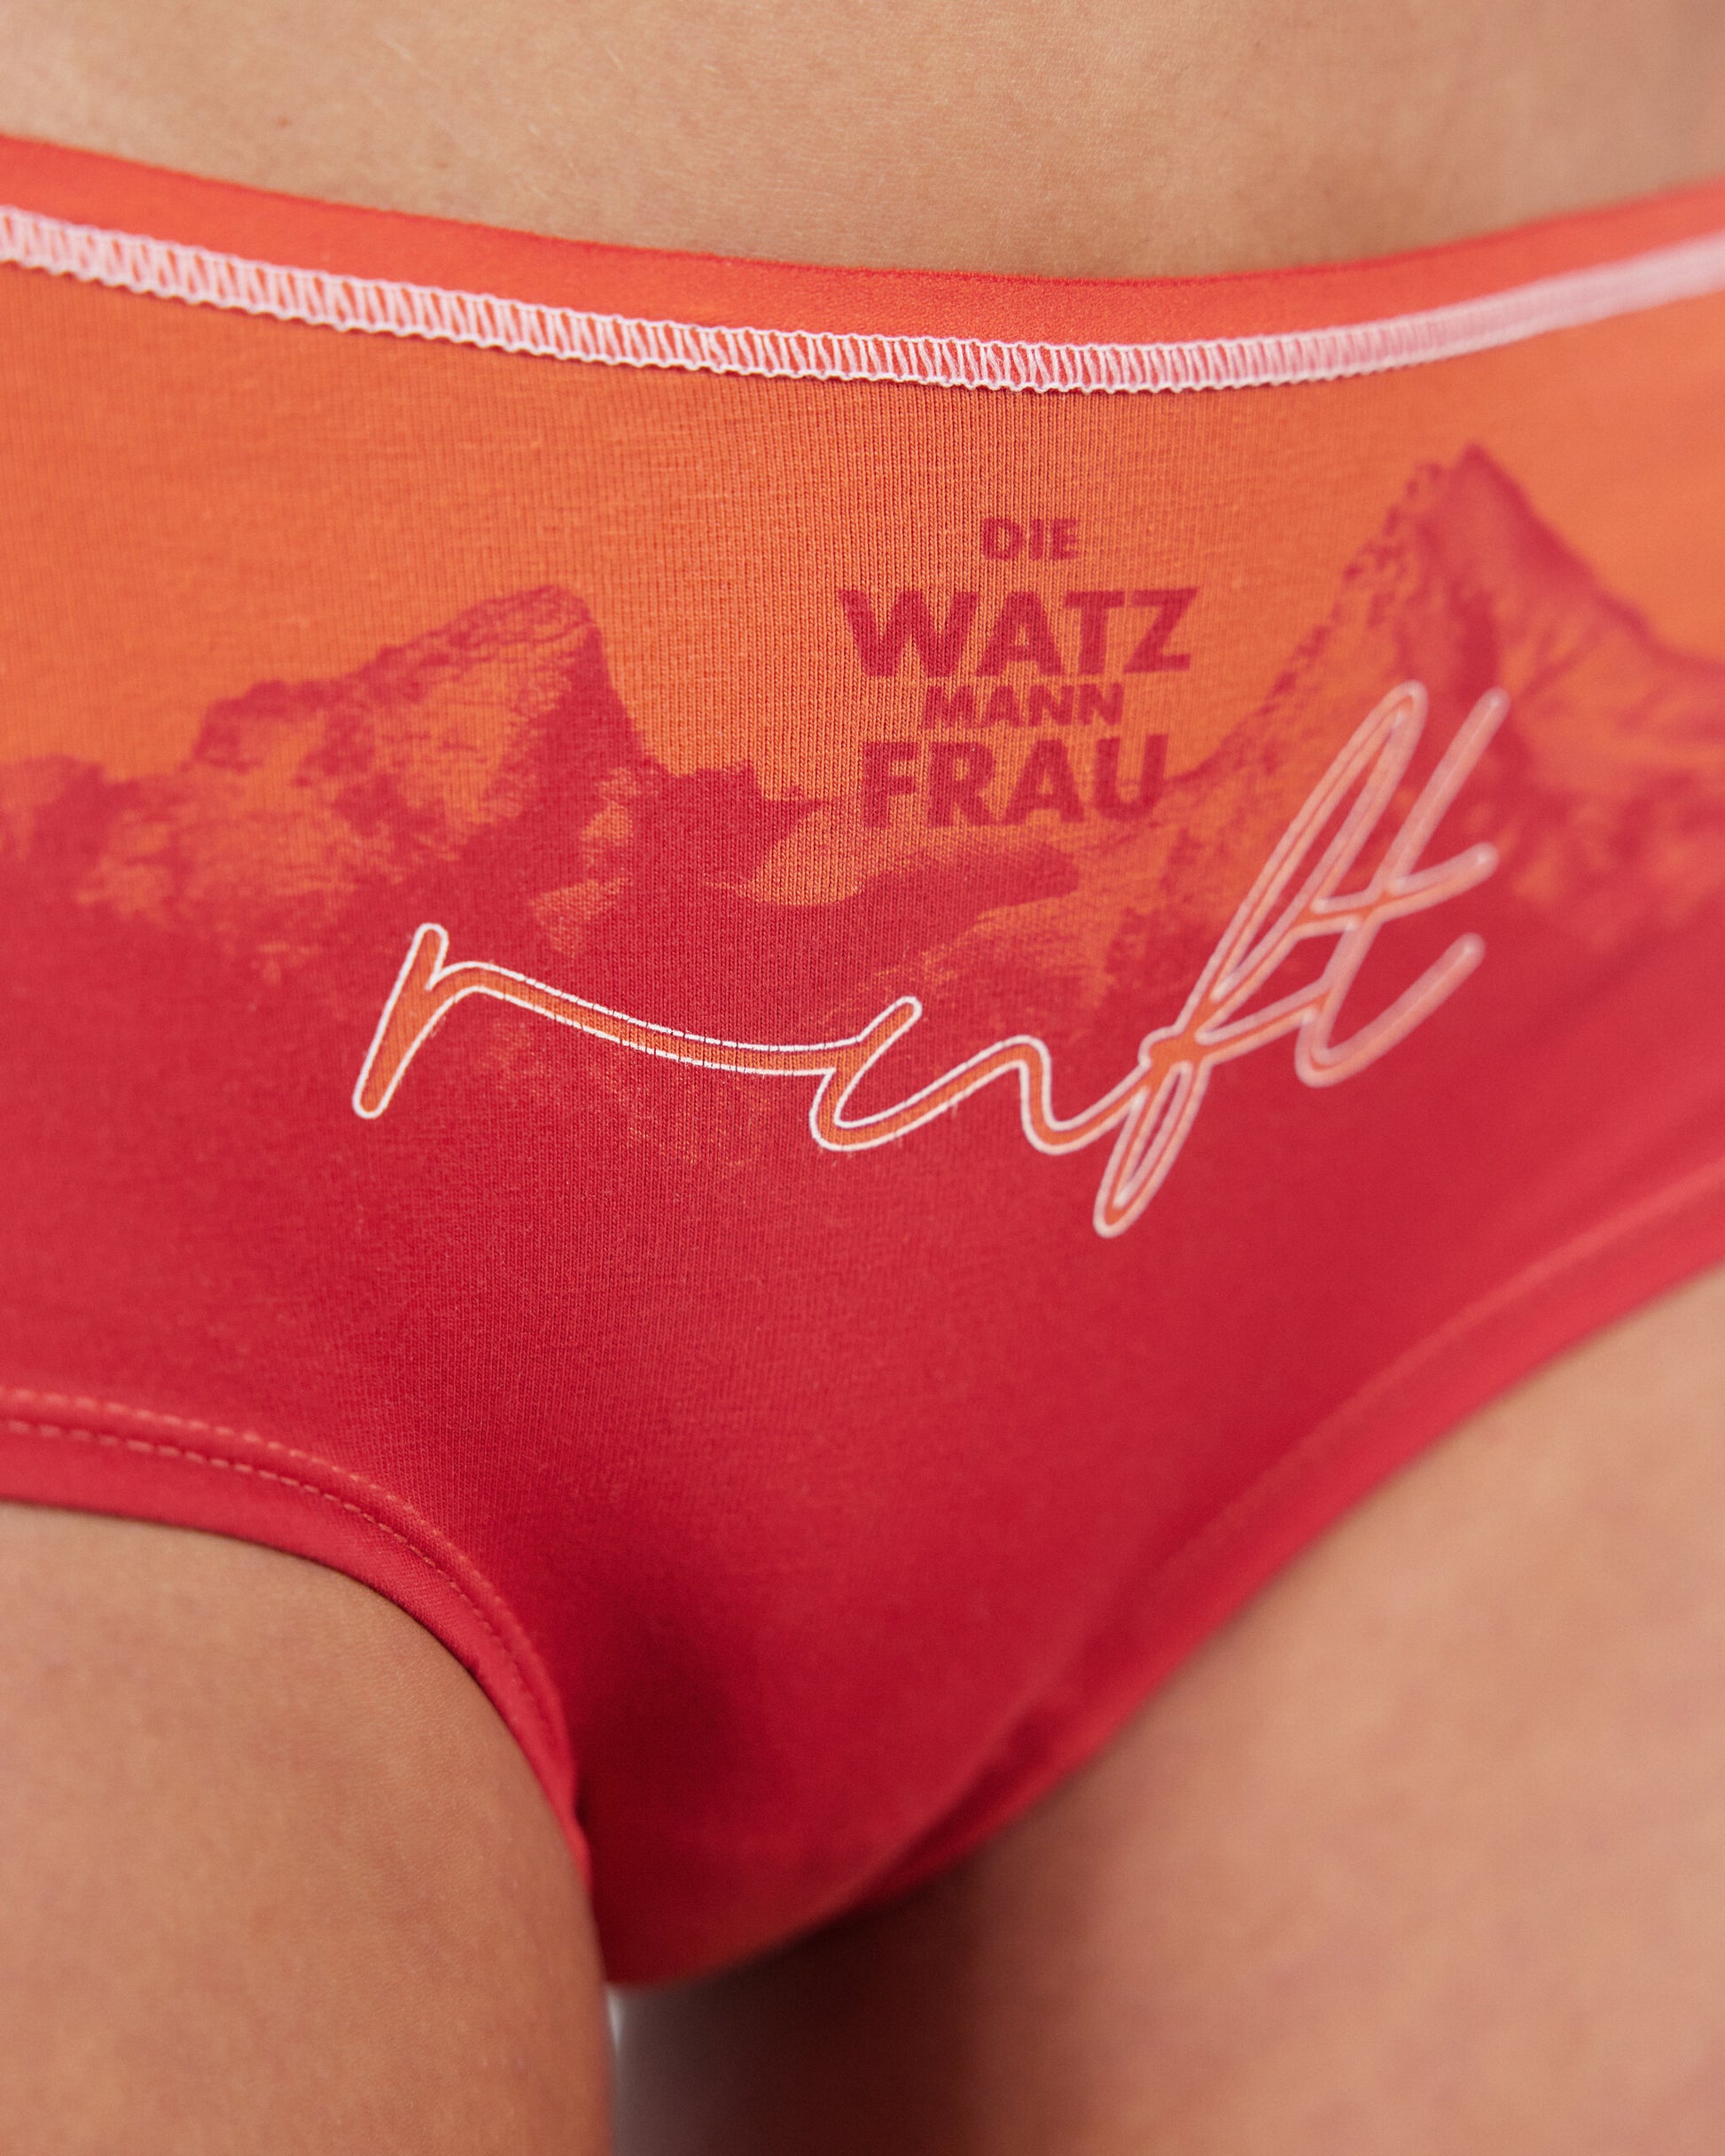 Panty Watzfrau. Watzmann Berge Unterhose. Unterwäsche zum Klettern.